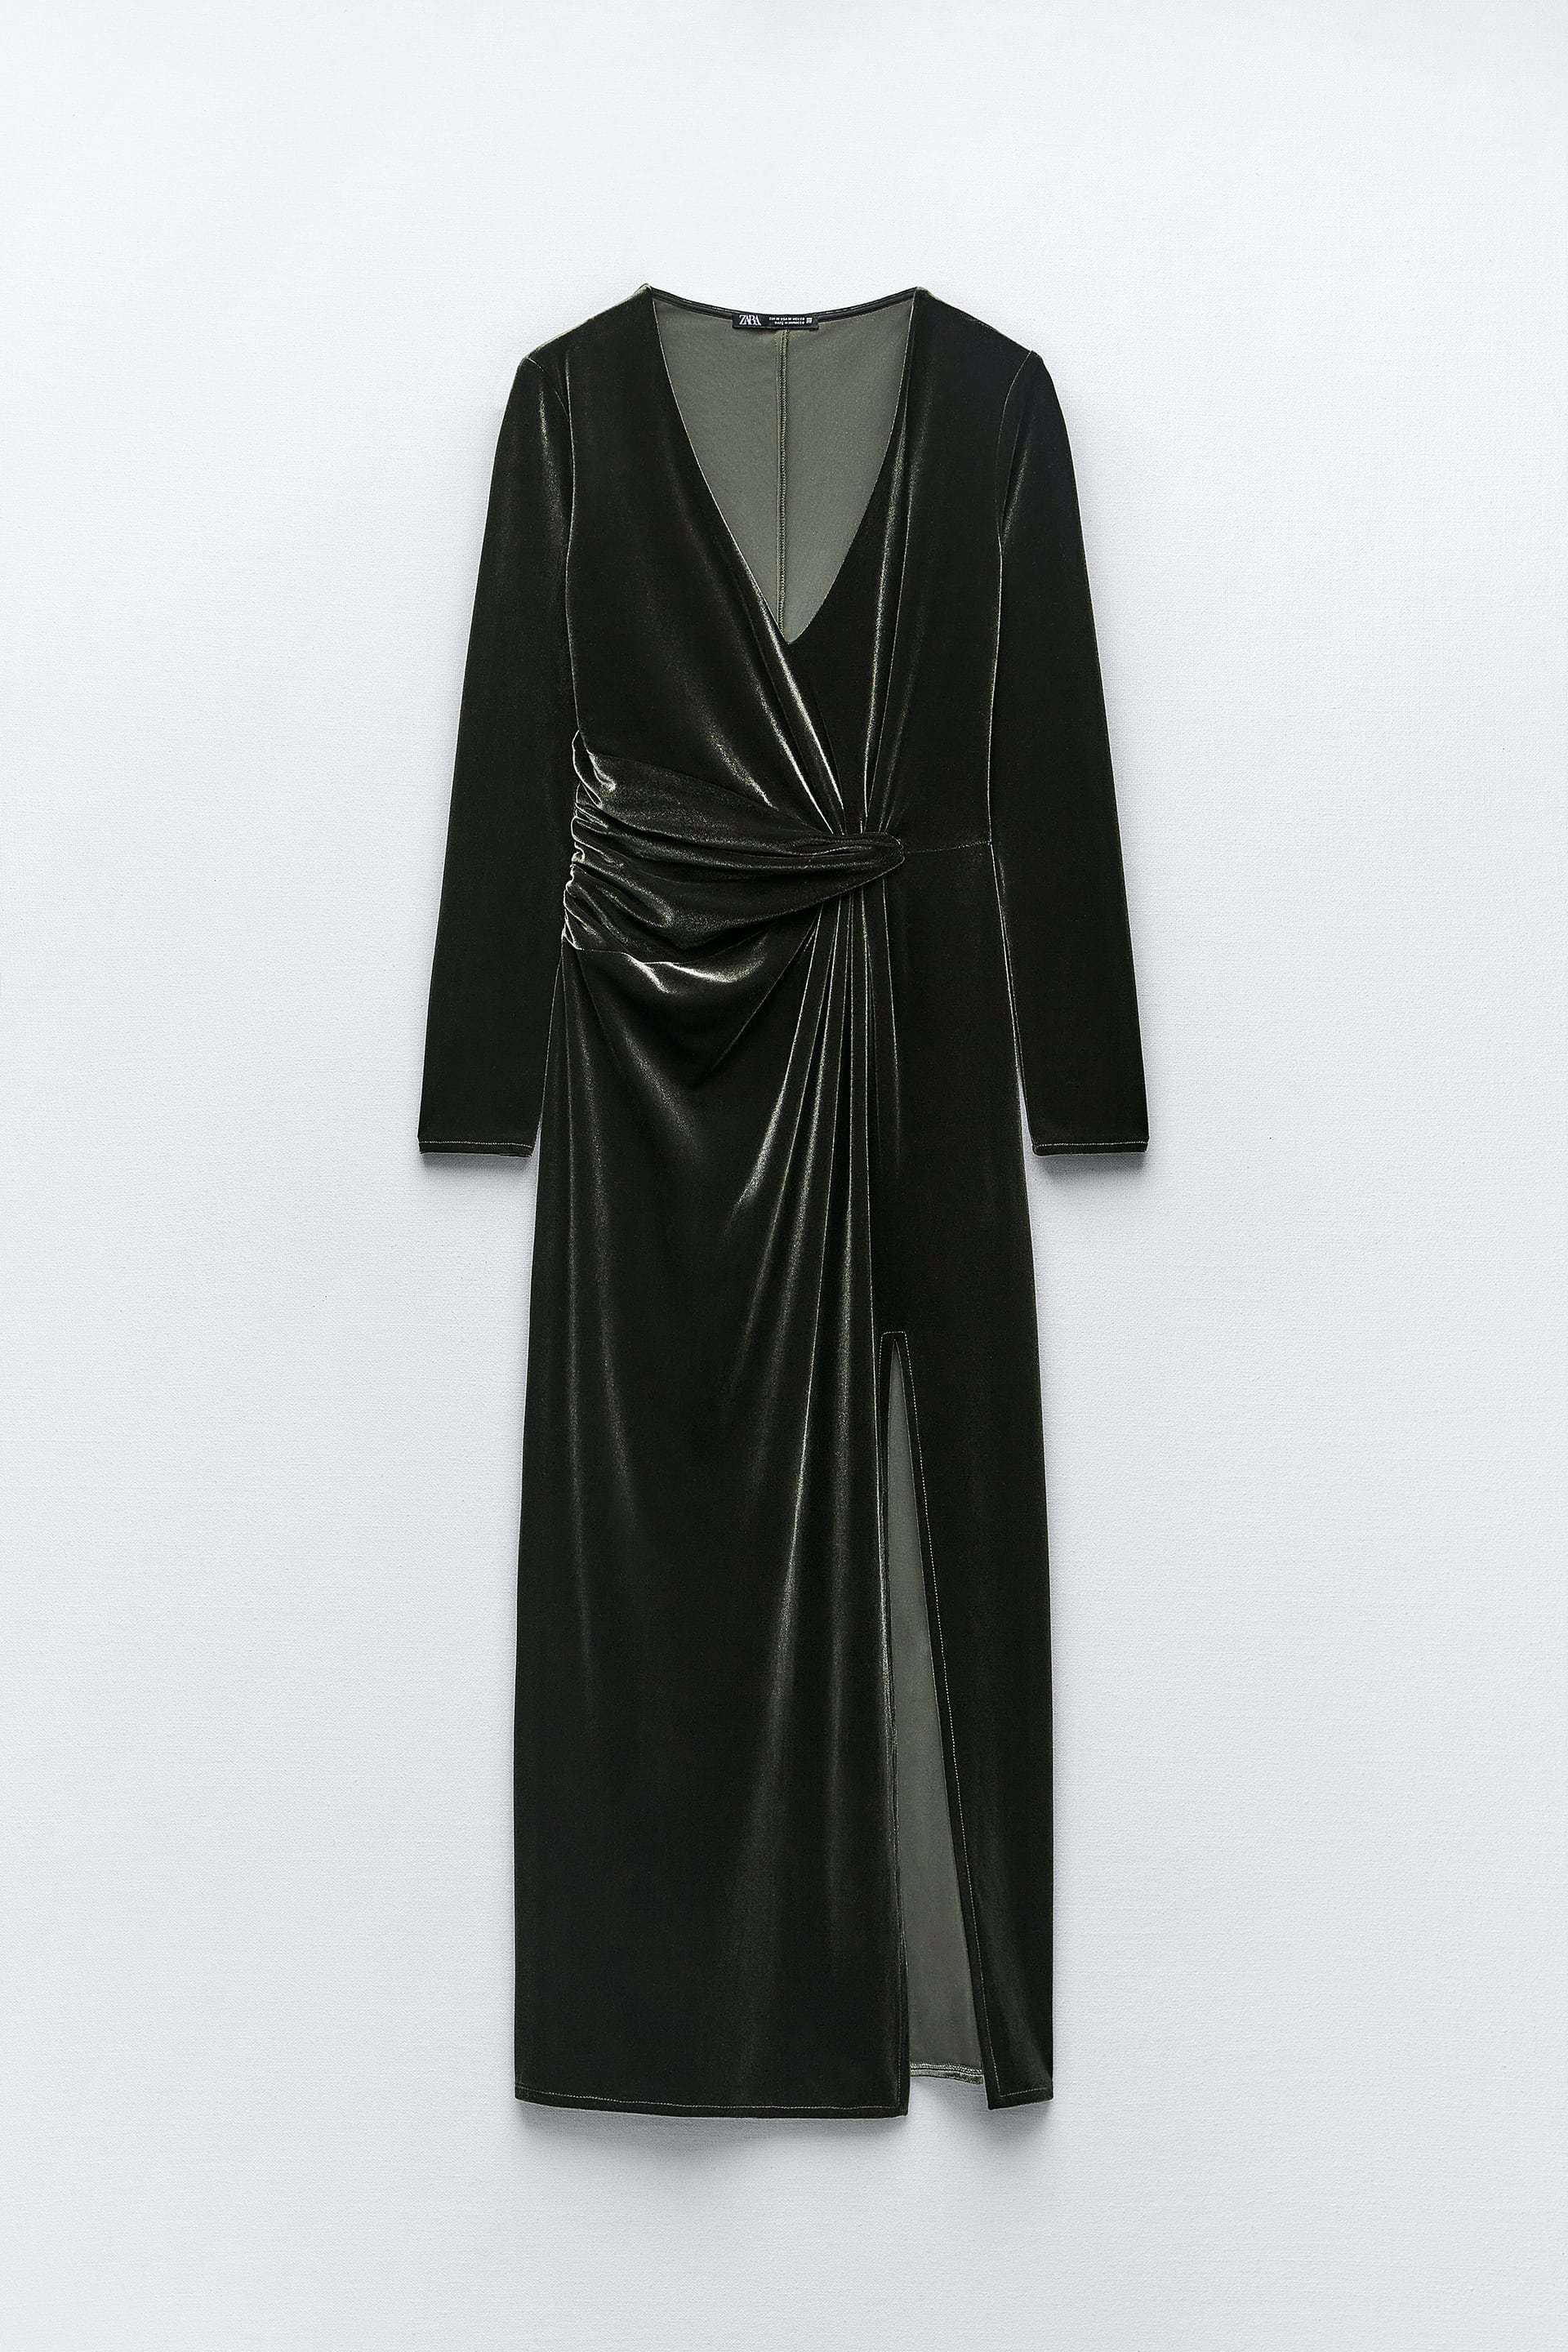 Vestido de terciopelo con manga larga de Zara (29,95 euros).